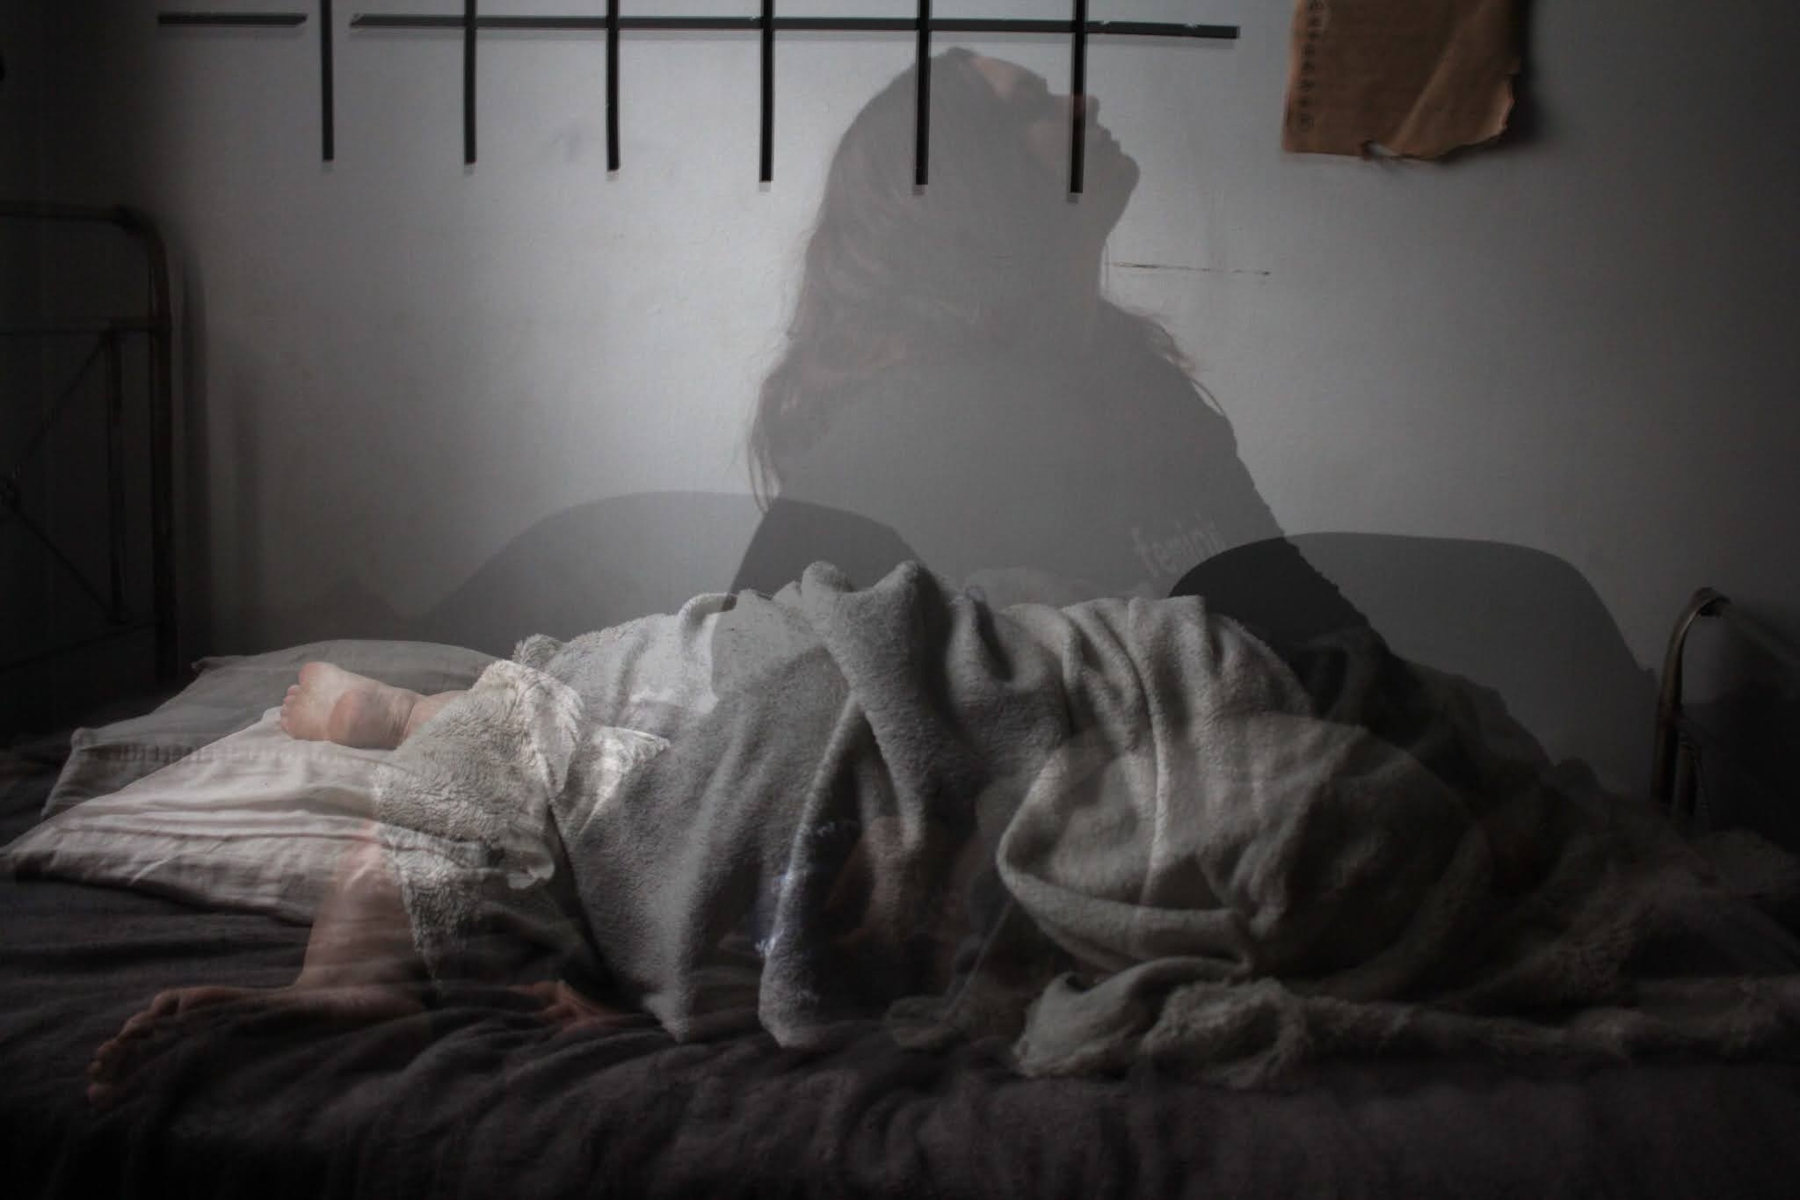 Νυχτερινός ύπνος: Πώς να κοιμηθείτε καλά και να απαλλαγείτε από το αίσθημα της παράνοιας;